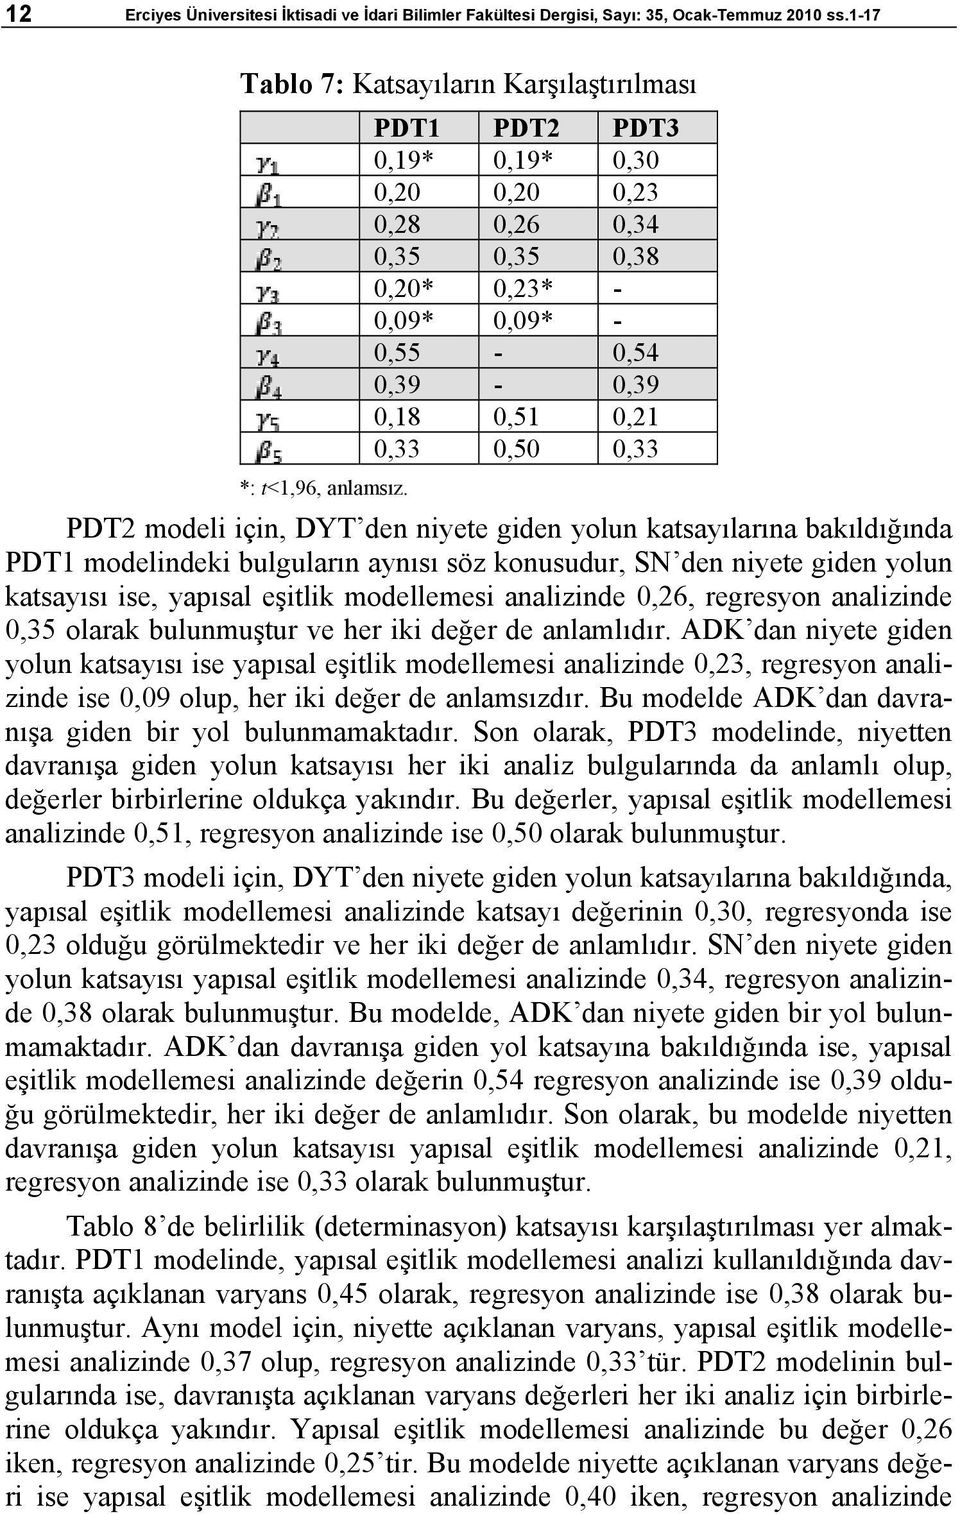 katsayılarına bakıldığında PDT1 modelindeki bulguların aynısı söz konusudur, SN den niyete giden yolun katsayısı ise, yapısal eşitlik modellemesi analizinde 0,26, regresyon analizinde 0,35 olarak